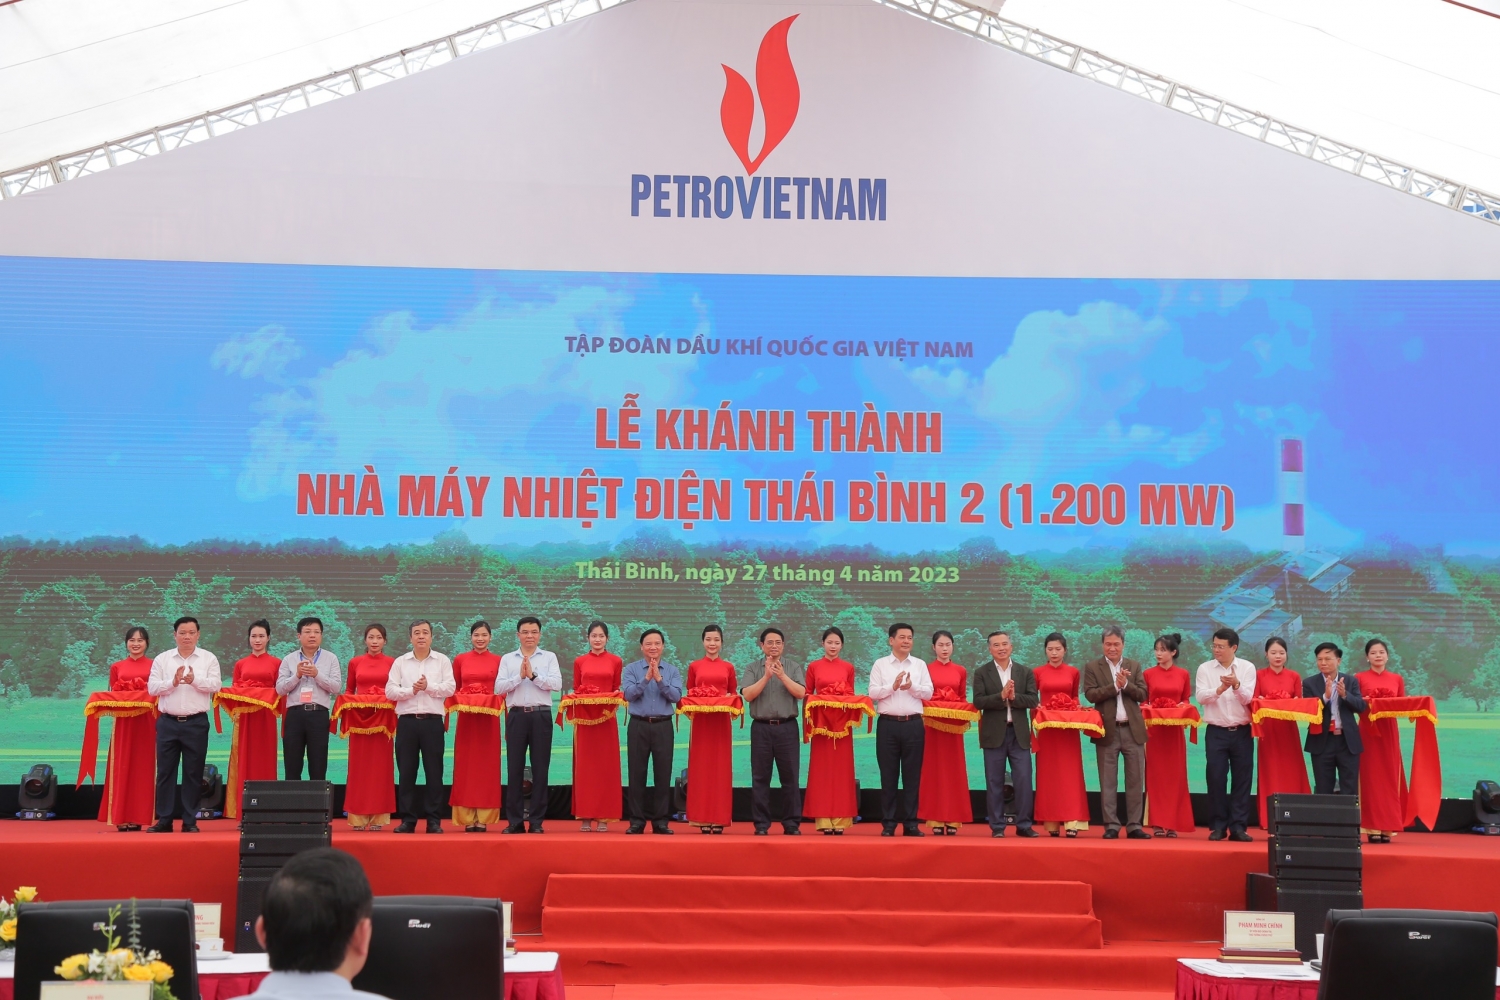 Các tập thể vinh dự nhận bằng khen tại Lễ khánh thành Nhà máy nhiệt điện Thái Bình 2